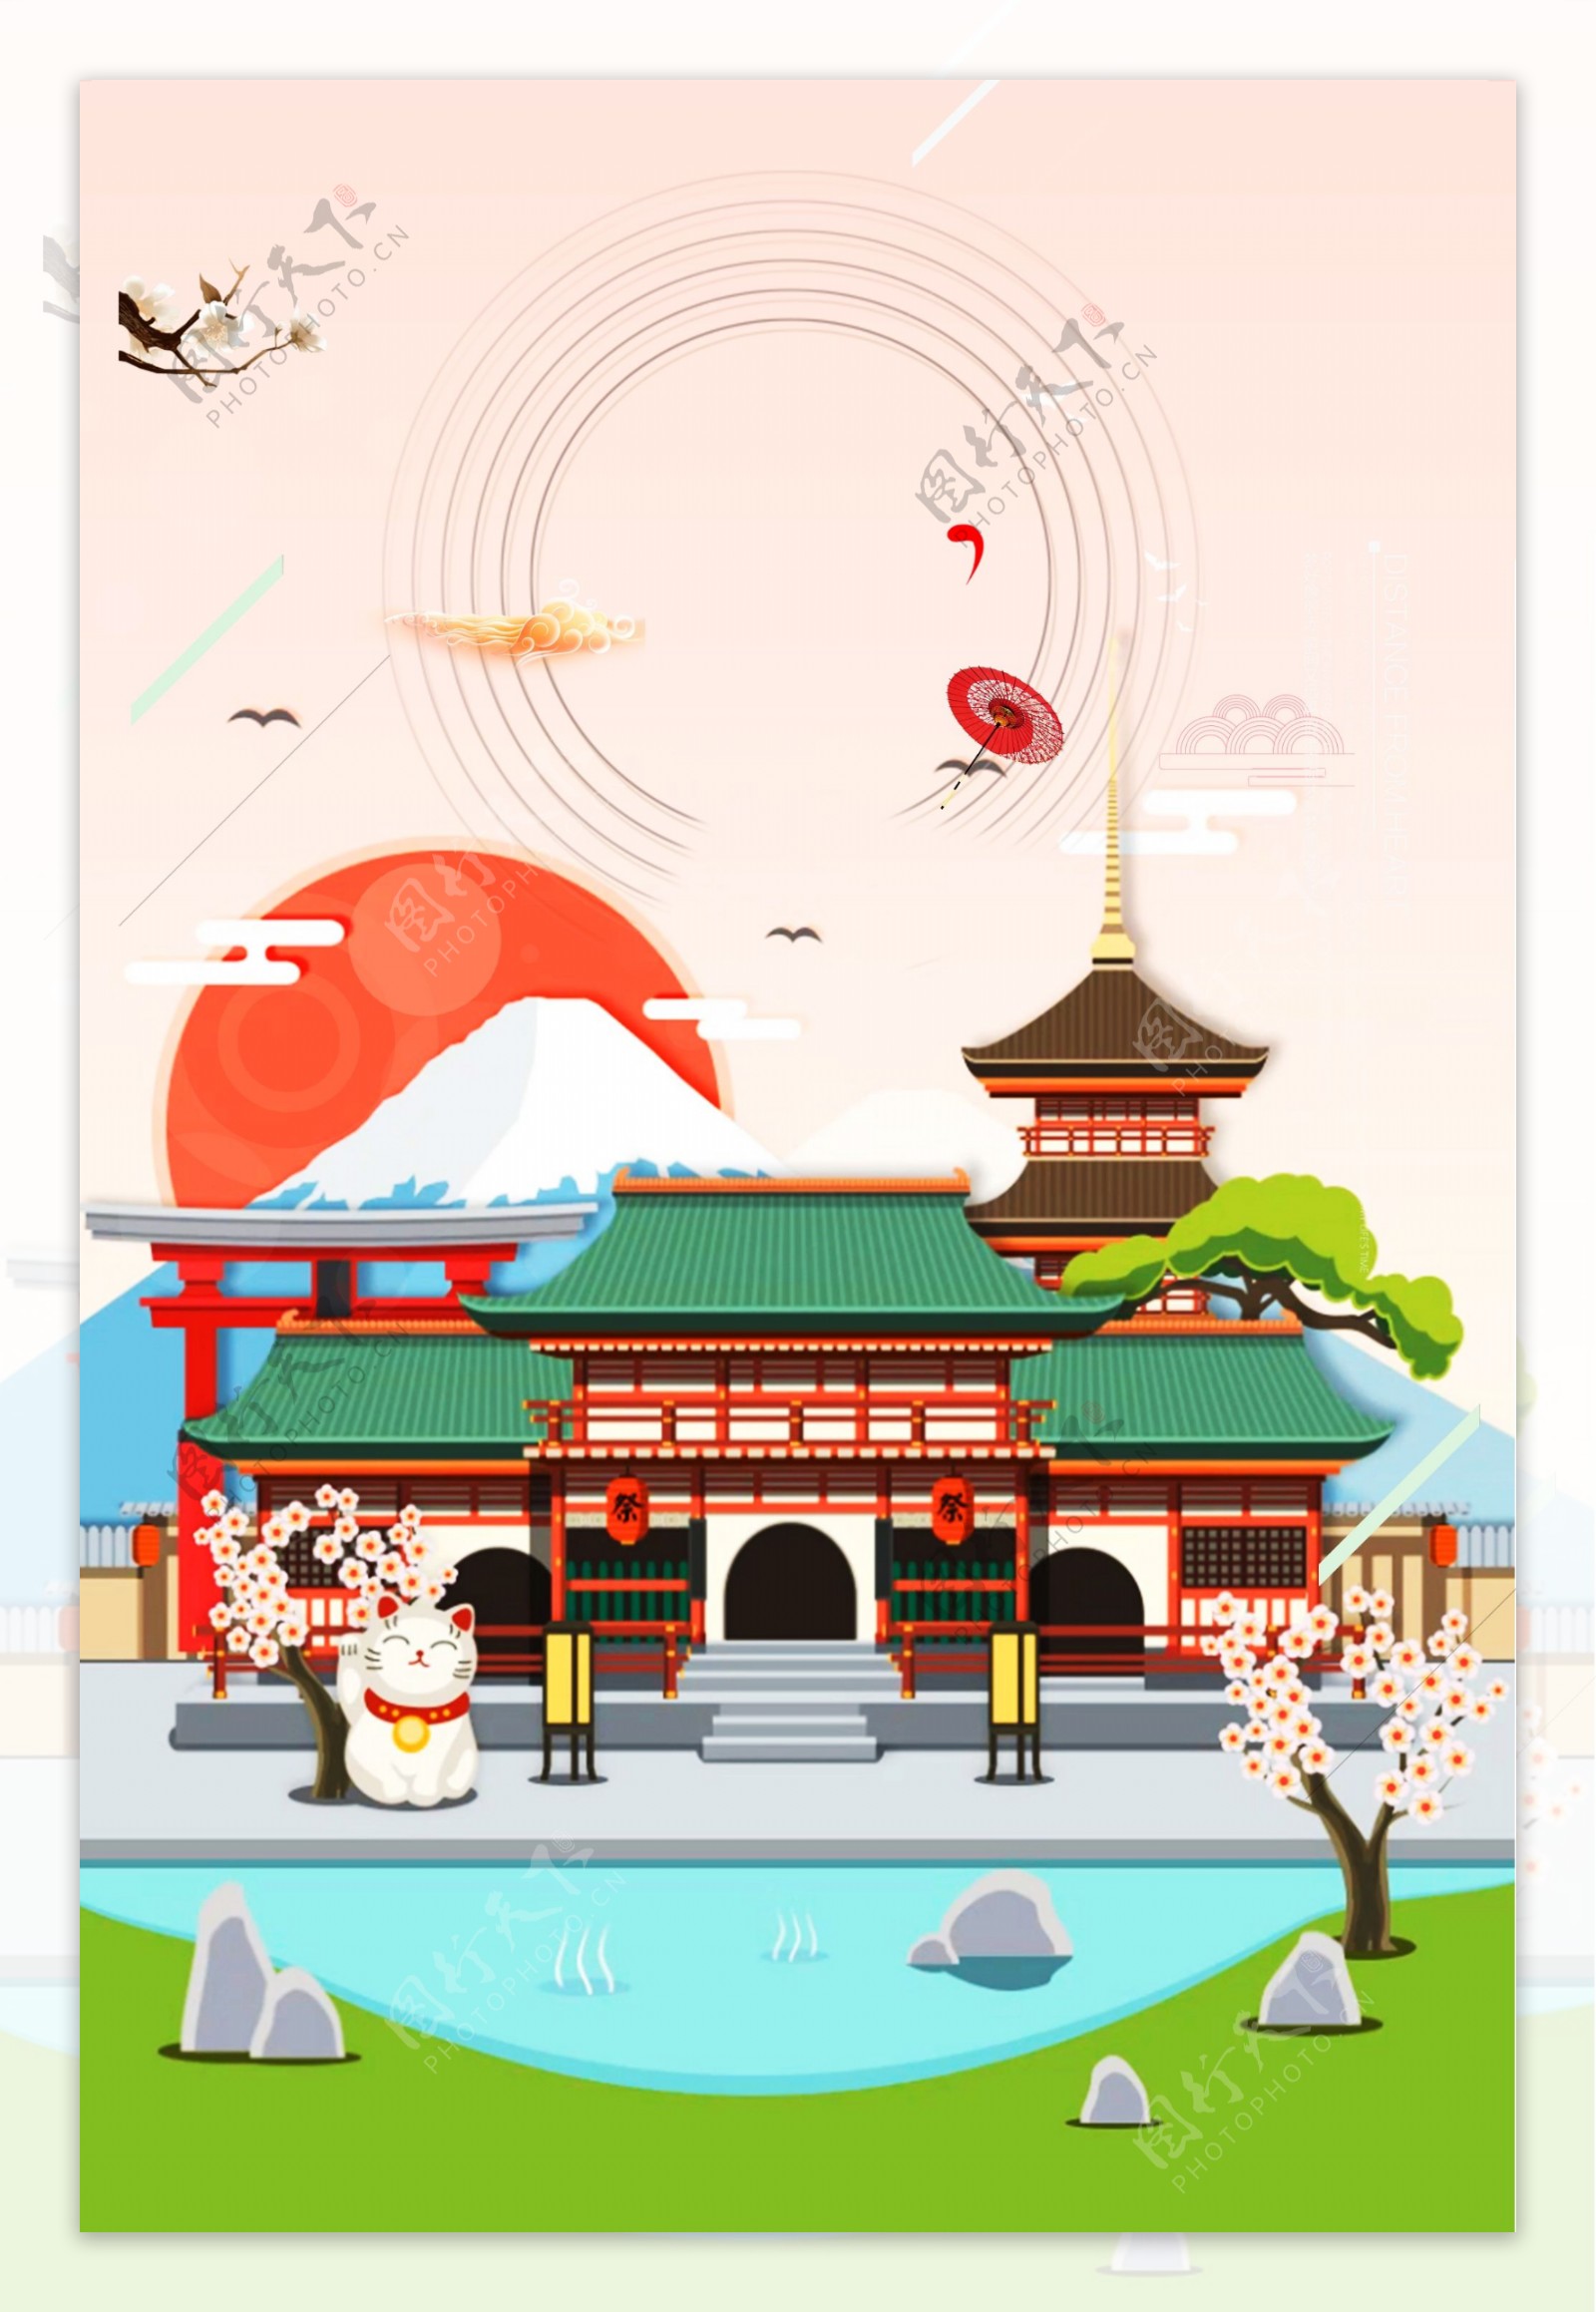 日本大阪旅游背景设计